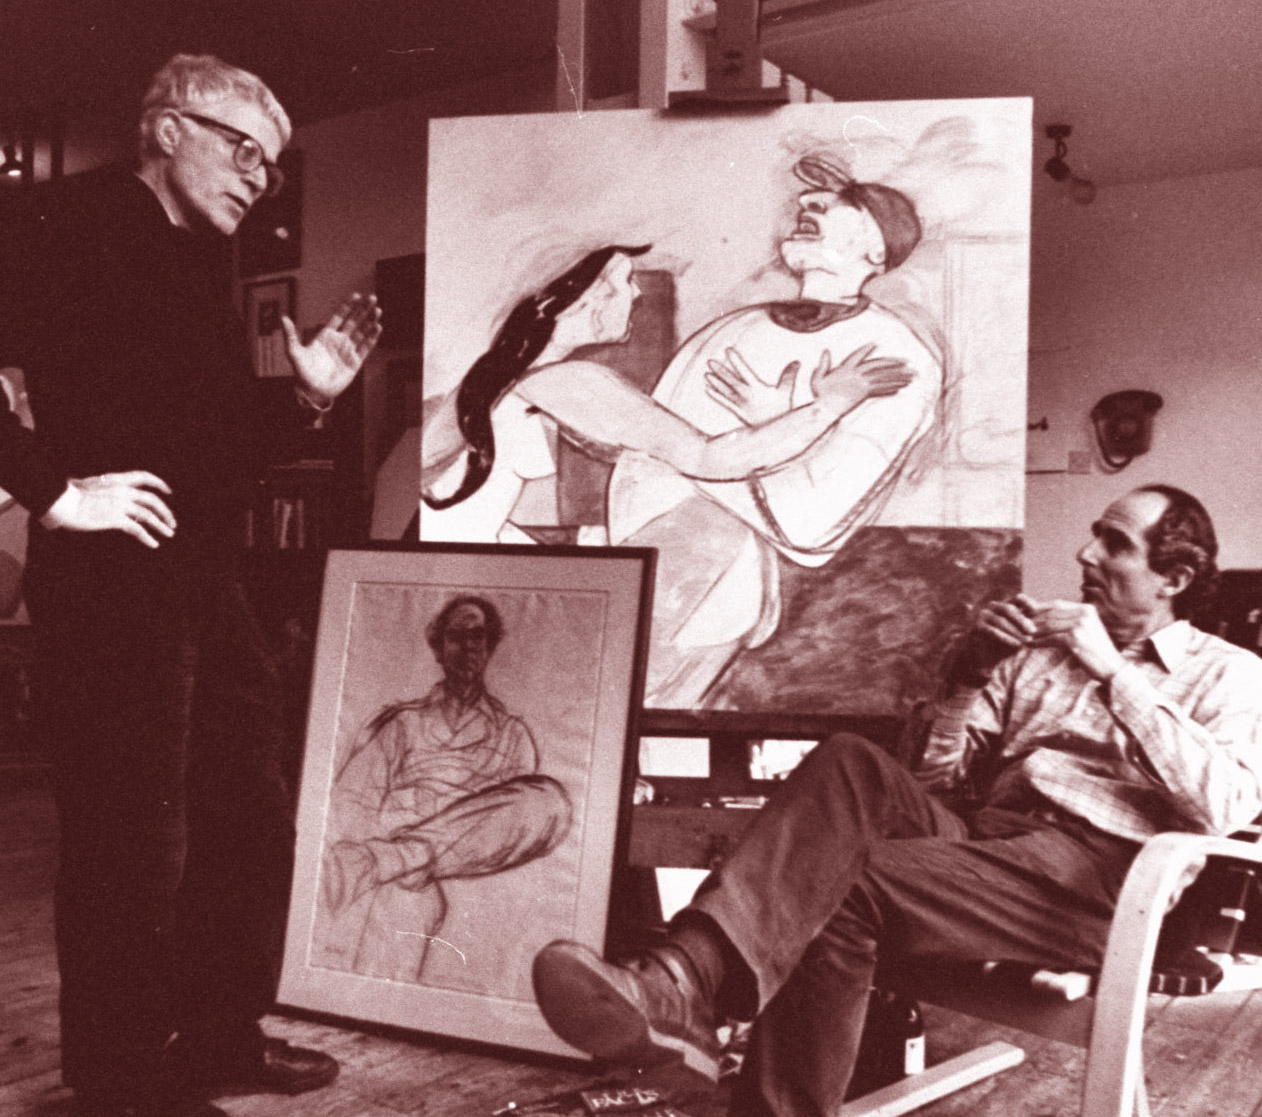 فيليب روث مع الرسام الأميركي رونالد بروكز كيتاج 1985 في جلسة لأجل بورتريه